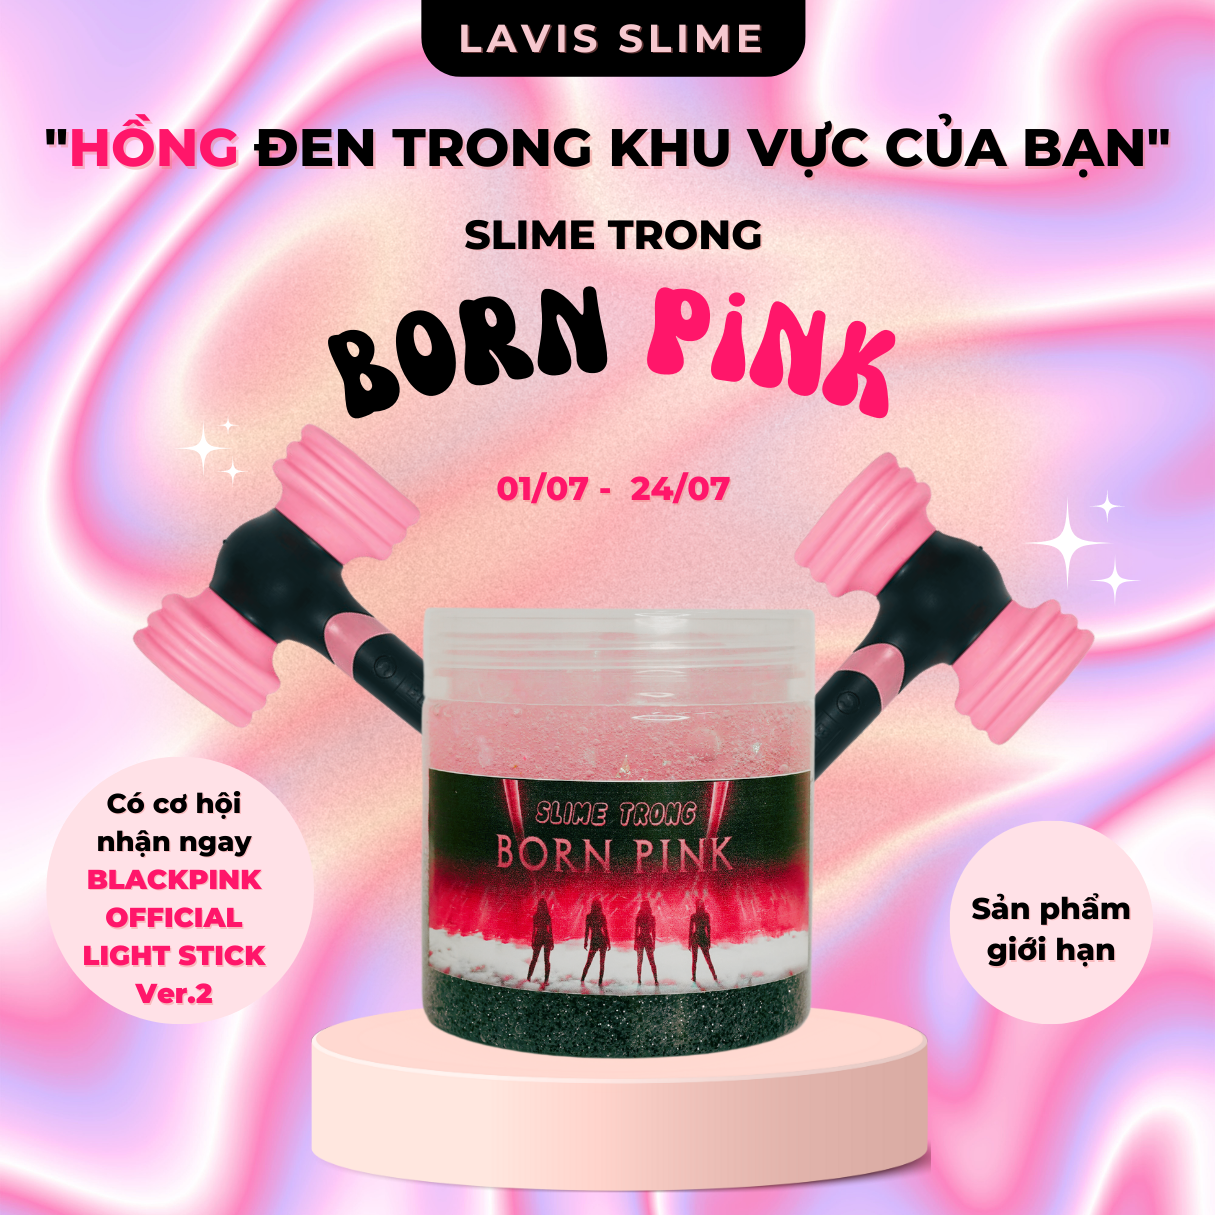 New Event – Slime Trong ” Born Pink ” – Sản phẩm giới hạn hòa cùng sự kiện concert của BLACKPINK